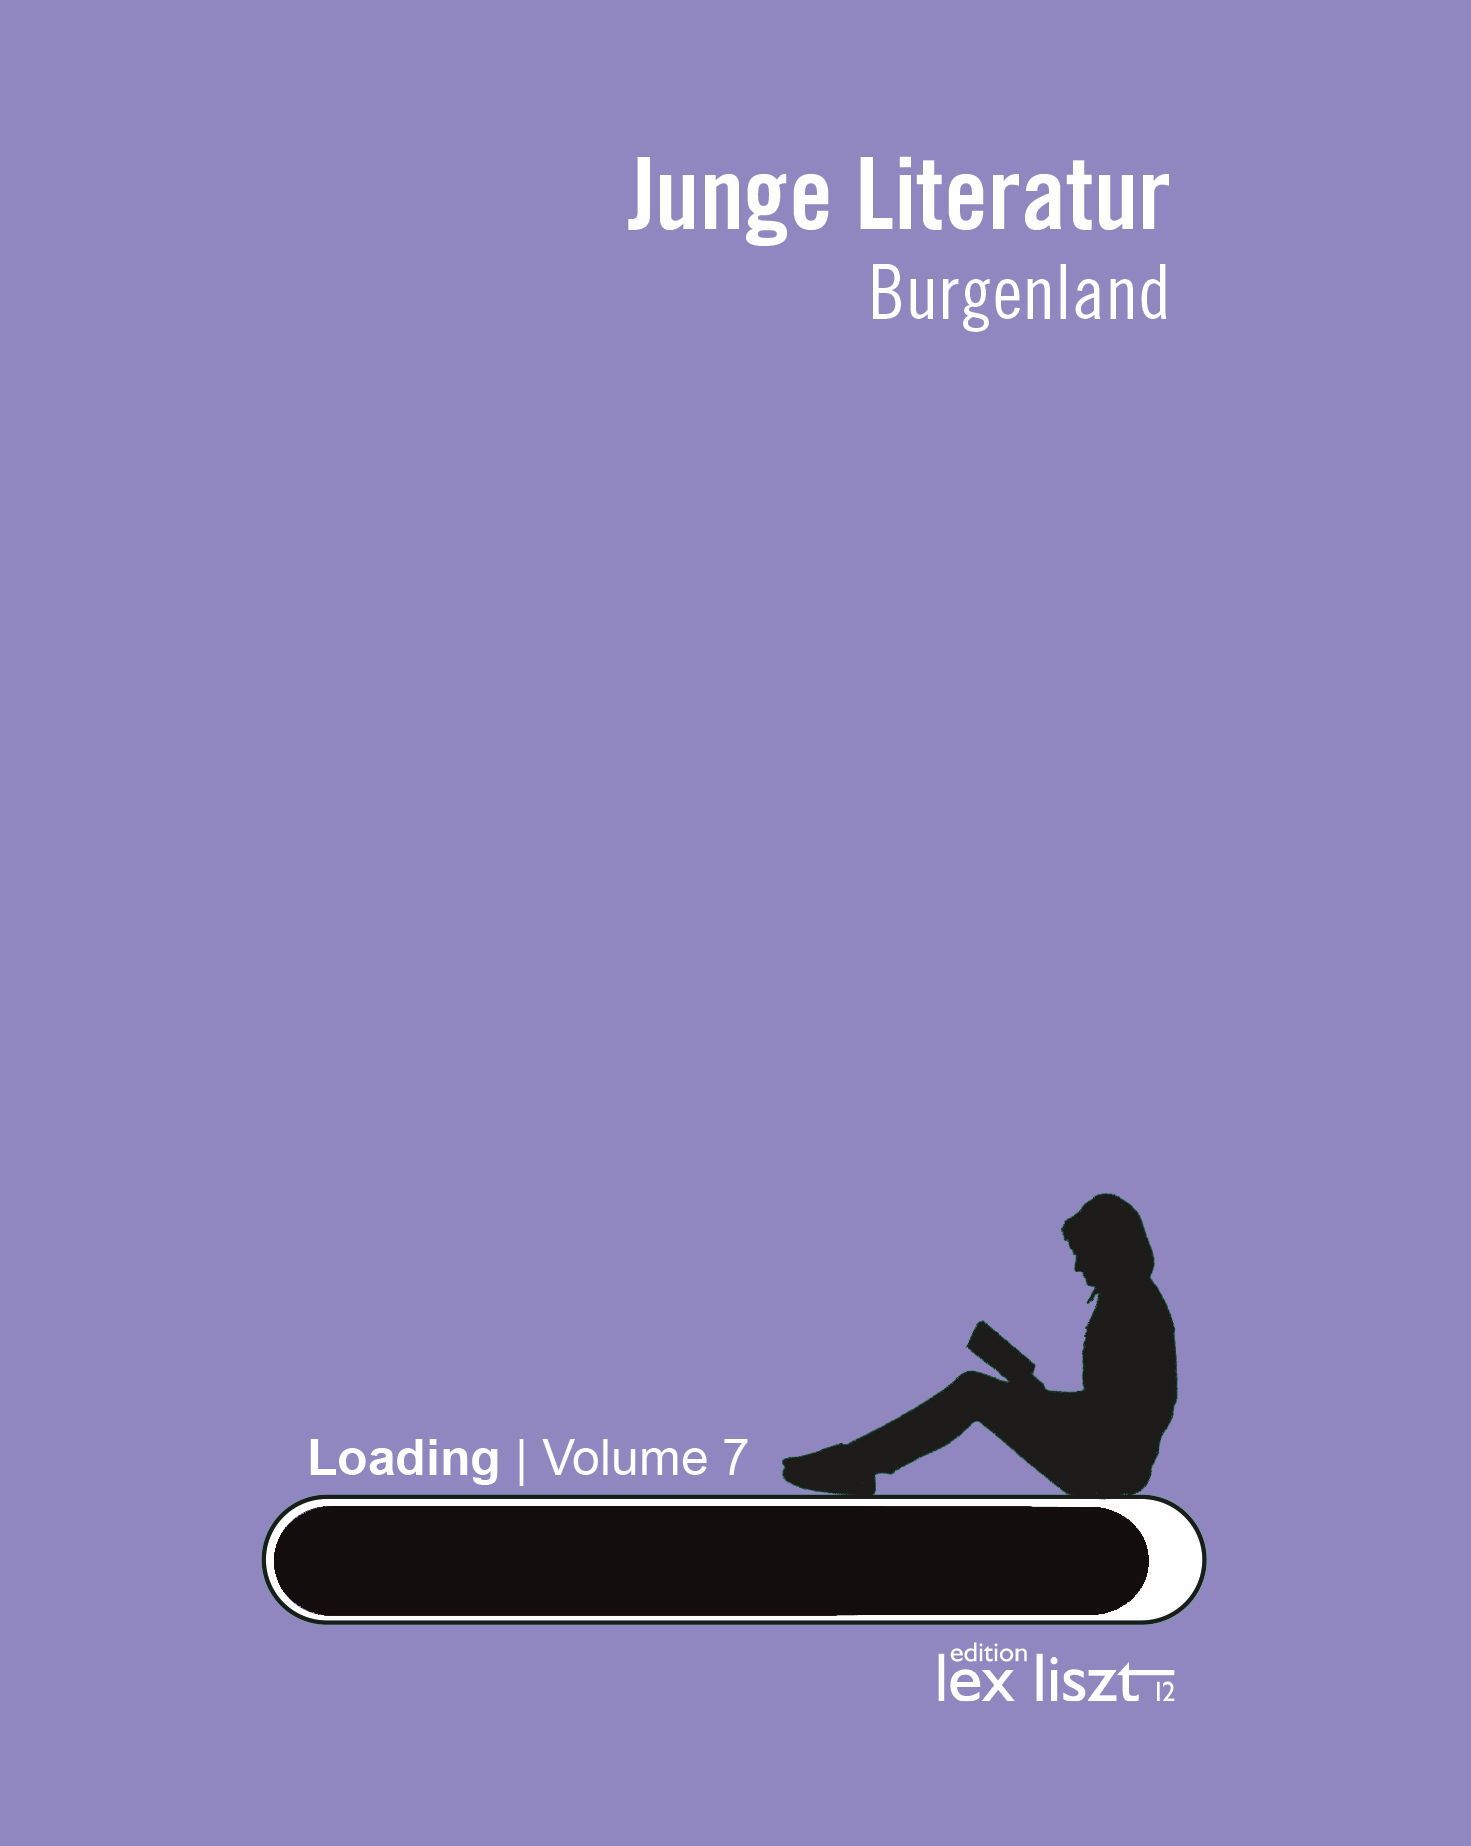 Junge Literatur Burgenland Edition Lex Liszt Volume 7 ISBN 978-3-99016-254-5